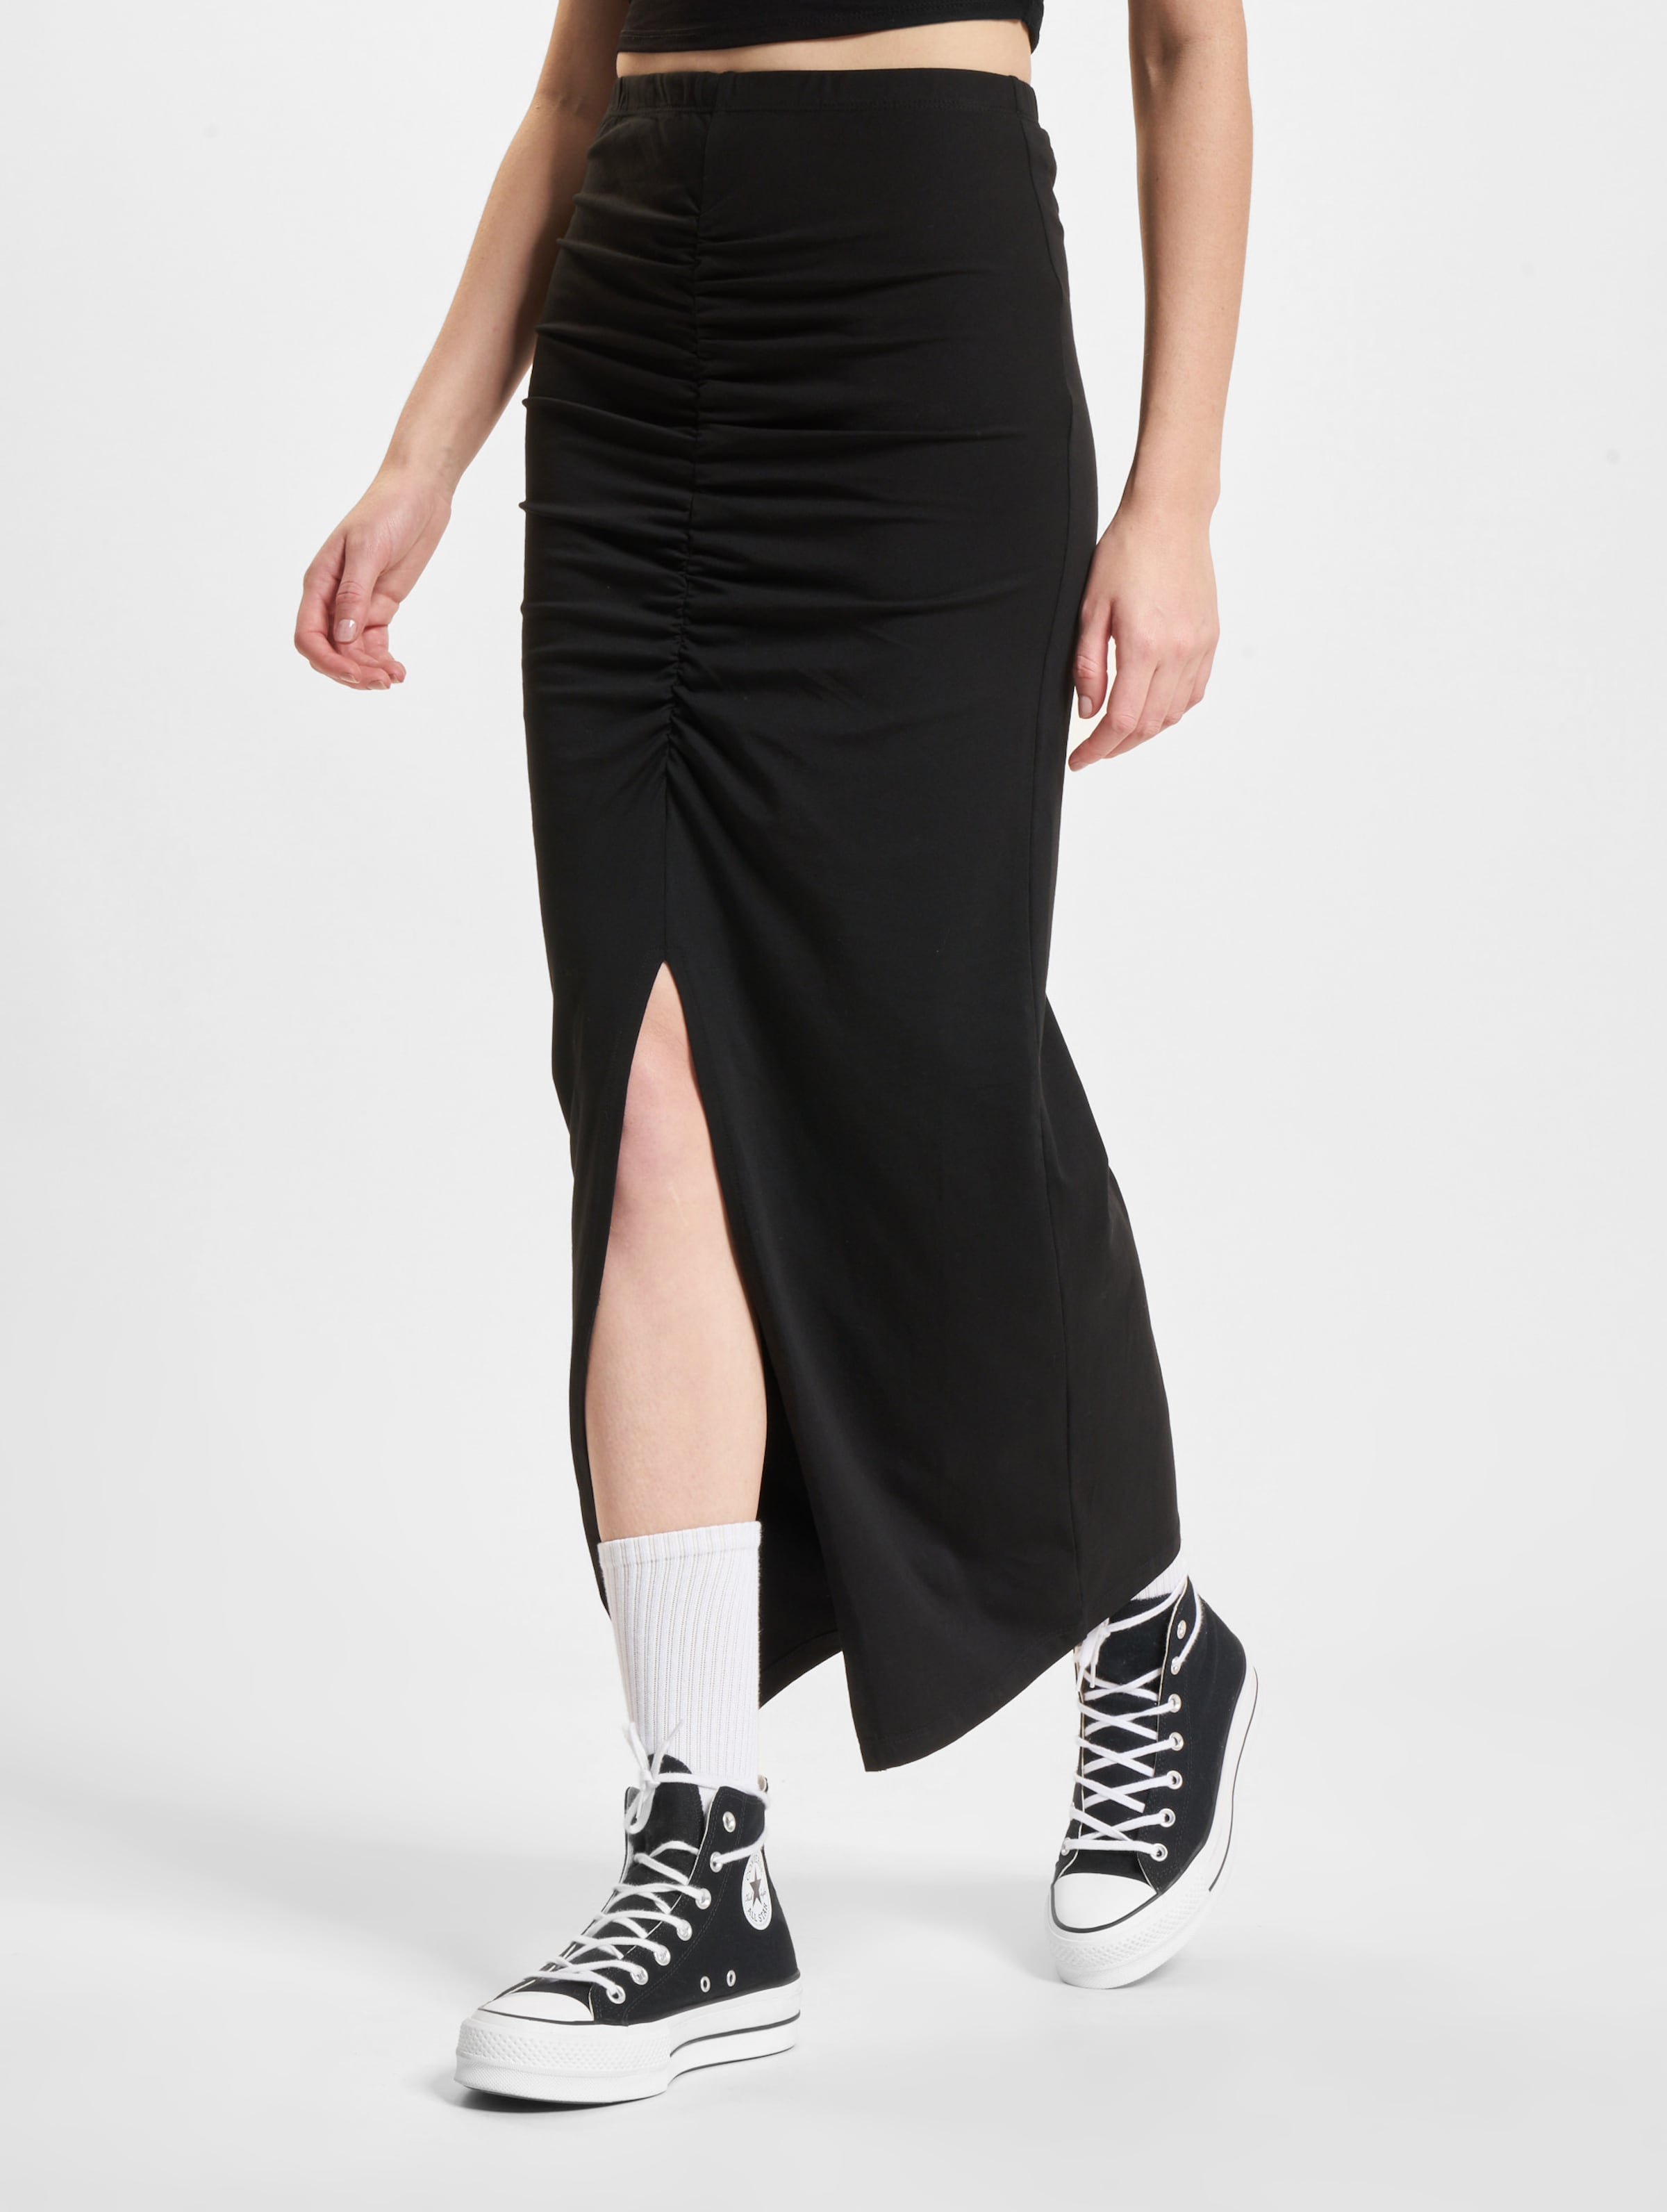 Only Angeel Jersey Life Ruching Skirt Frauen,Unisex op kleur zwart, Maat XS